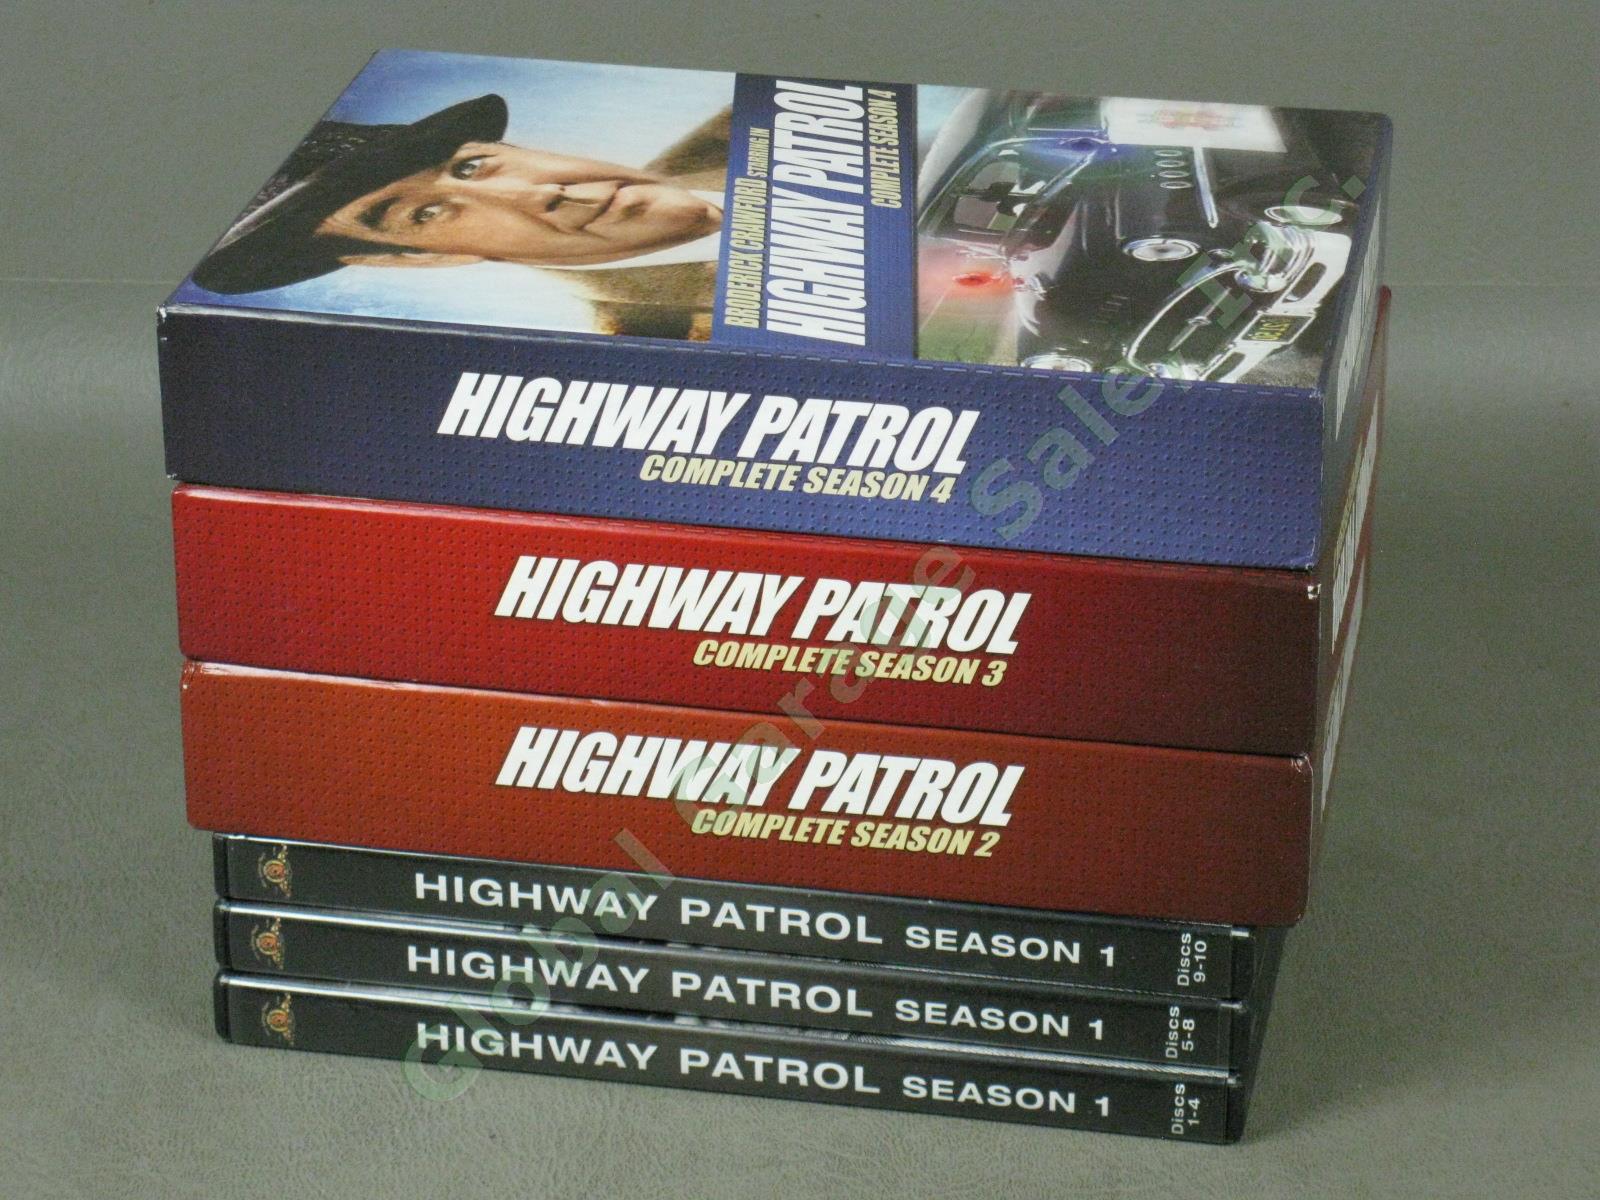 Highway Patrol 25-DVD Box Set Lot Complete 1950s TV Series Seasons 1 2 3 4 NR!